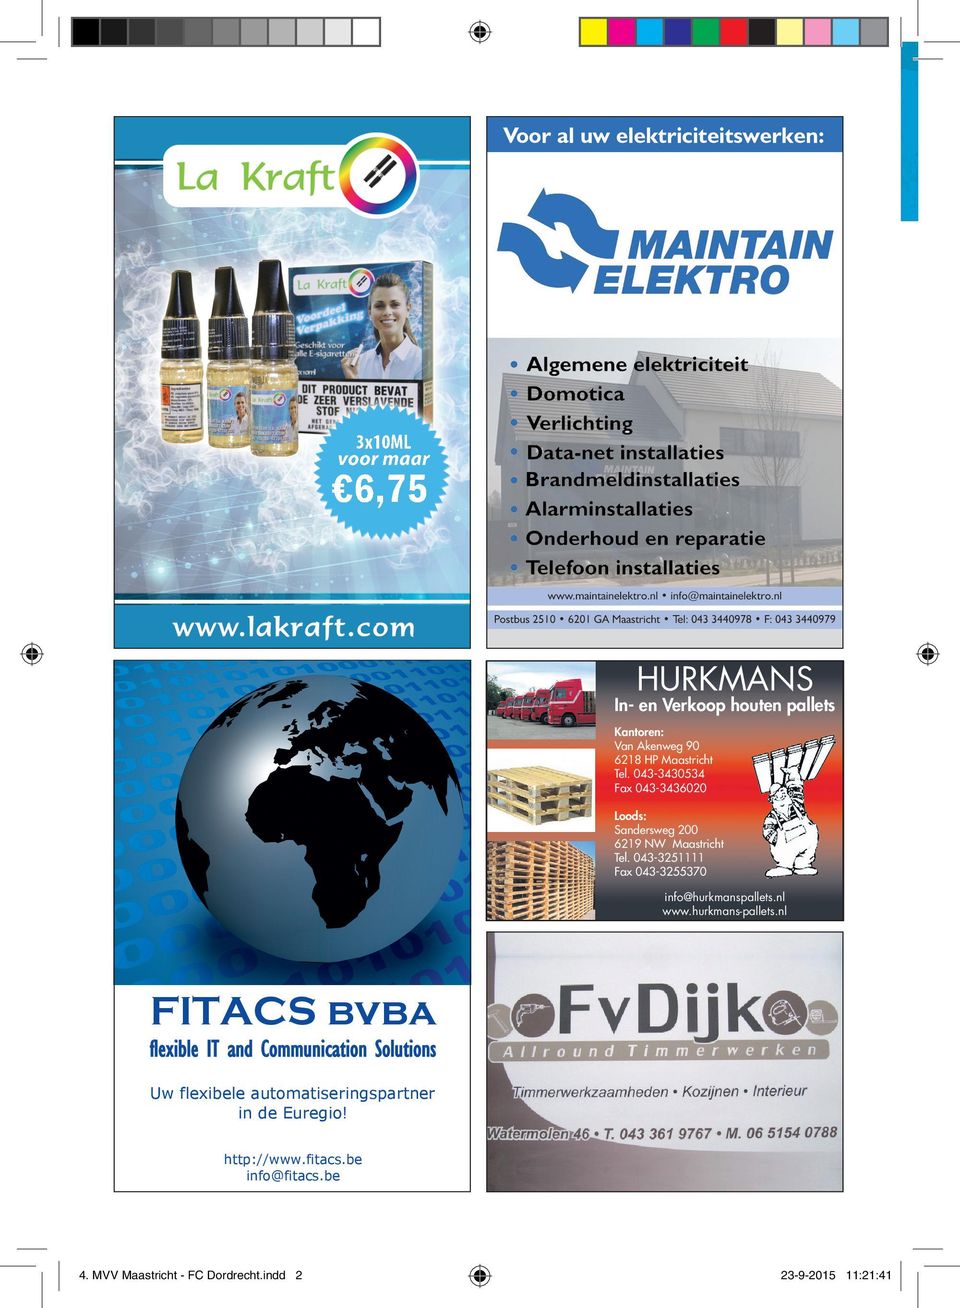 pdf 1 FITACS bvba FITACS bvba Flexible IT And Communication Solutions is een flexibele ICT dienstverlener die gespecialiseerd is in het adviseren, ondersteunen en verrichten van complete ICT